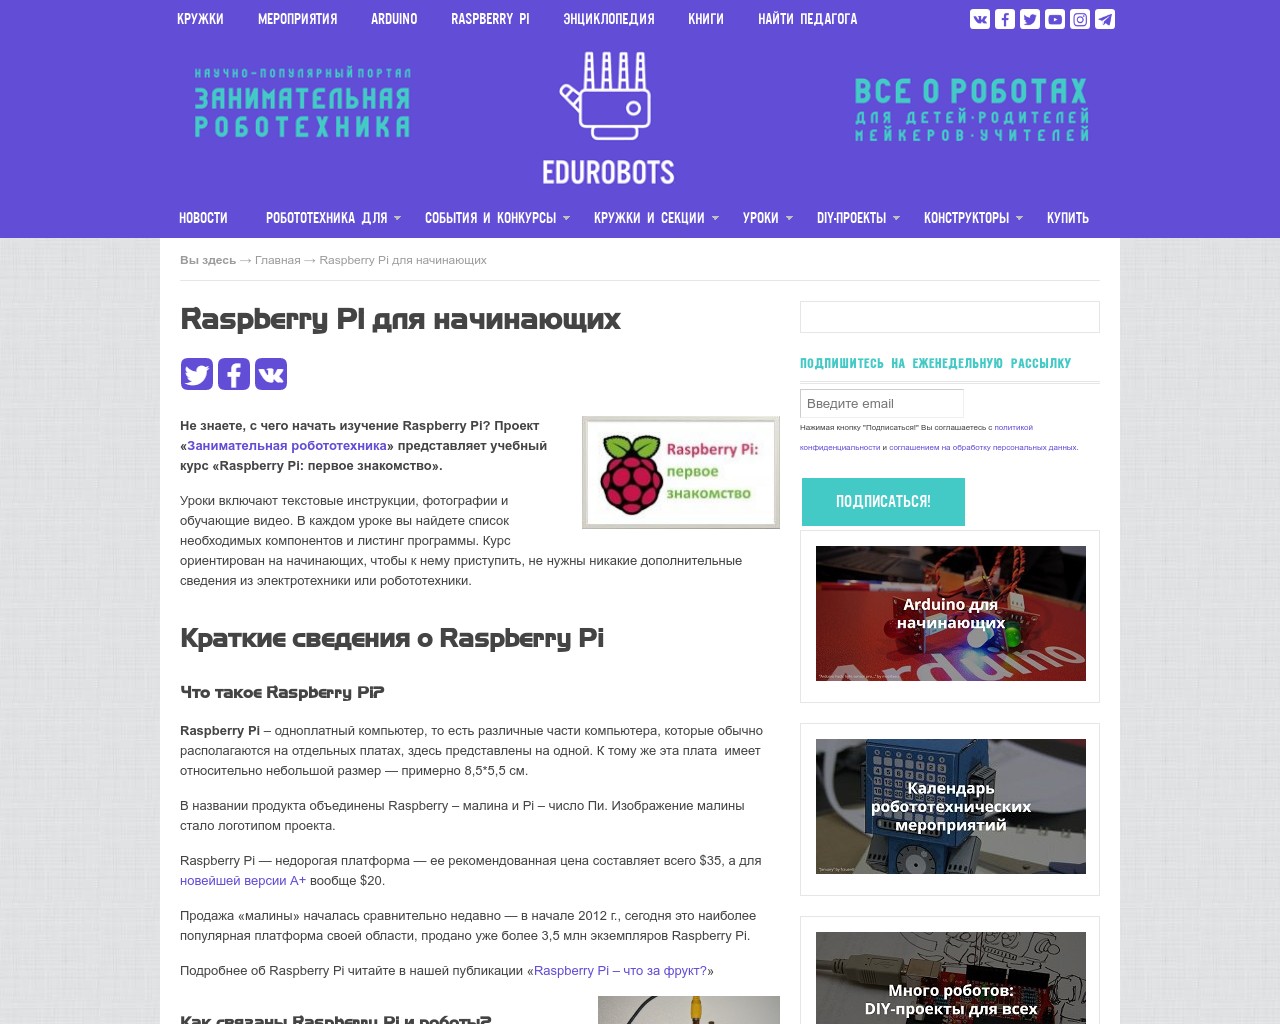 Картинка скриншота сайта - Не знаете, с чего начать изучение Raspberry Pi?